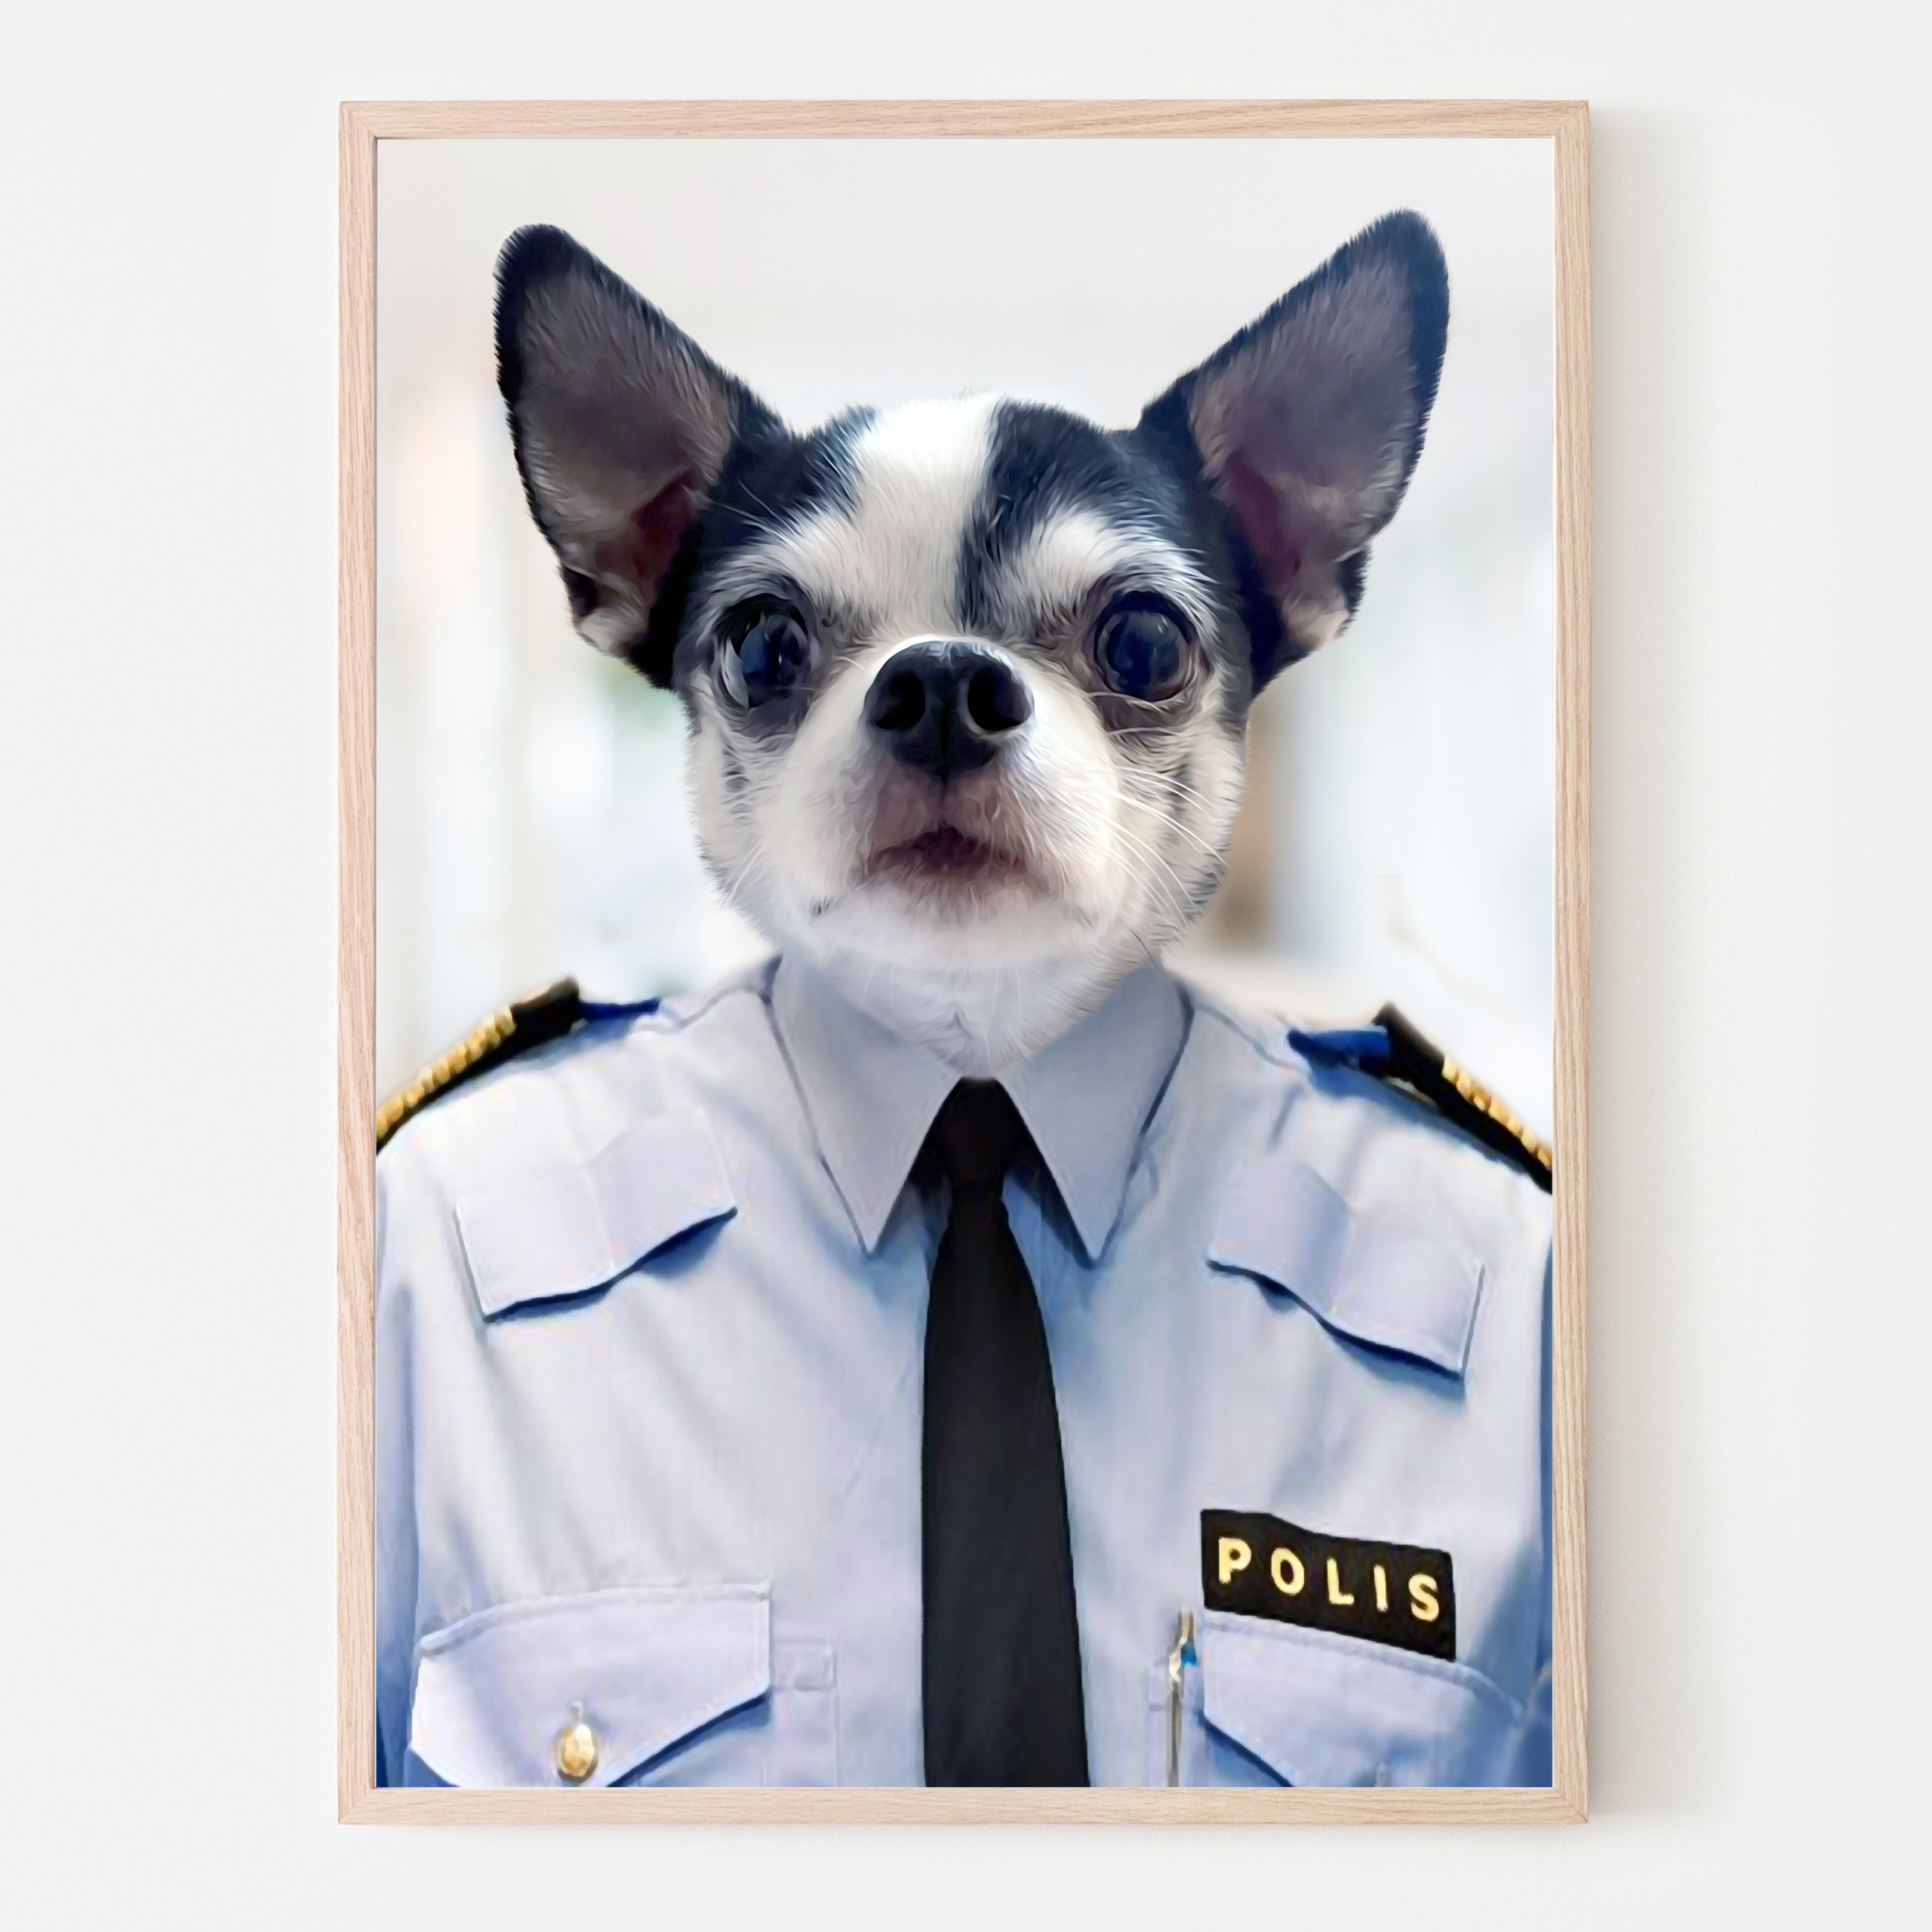 Polischefen Personlig Hundtavla